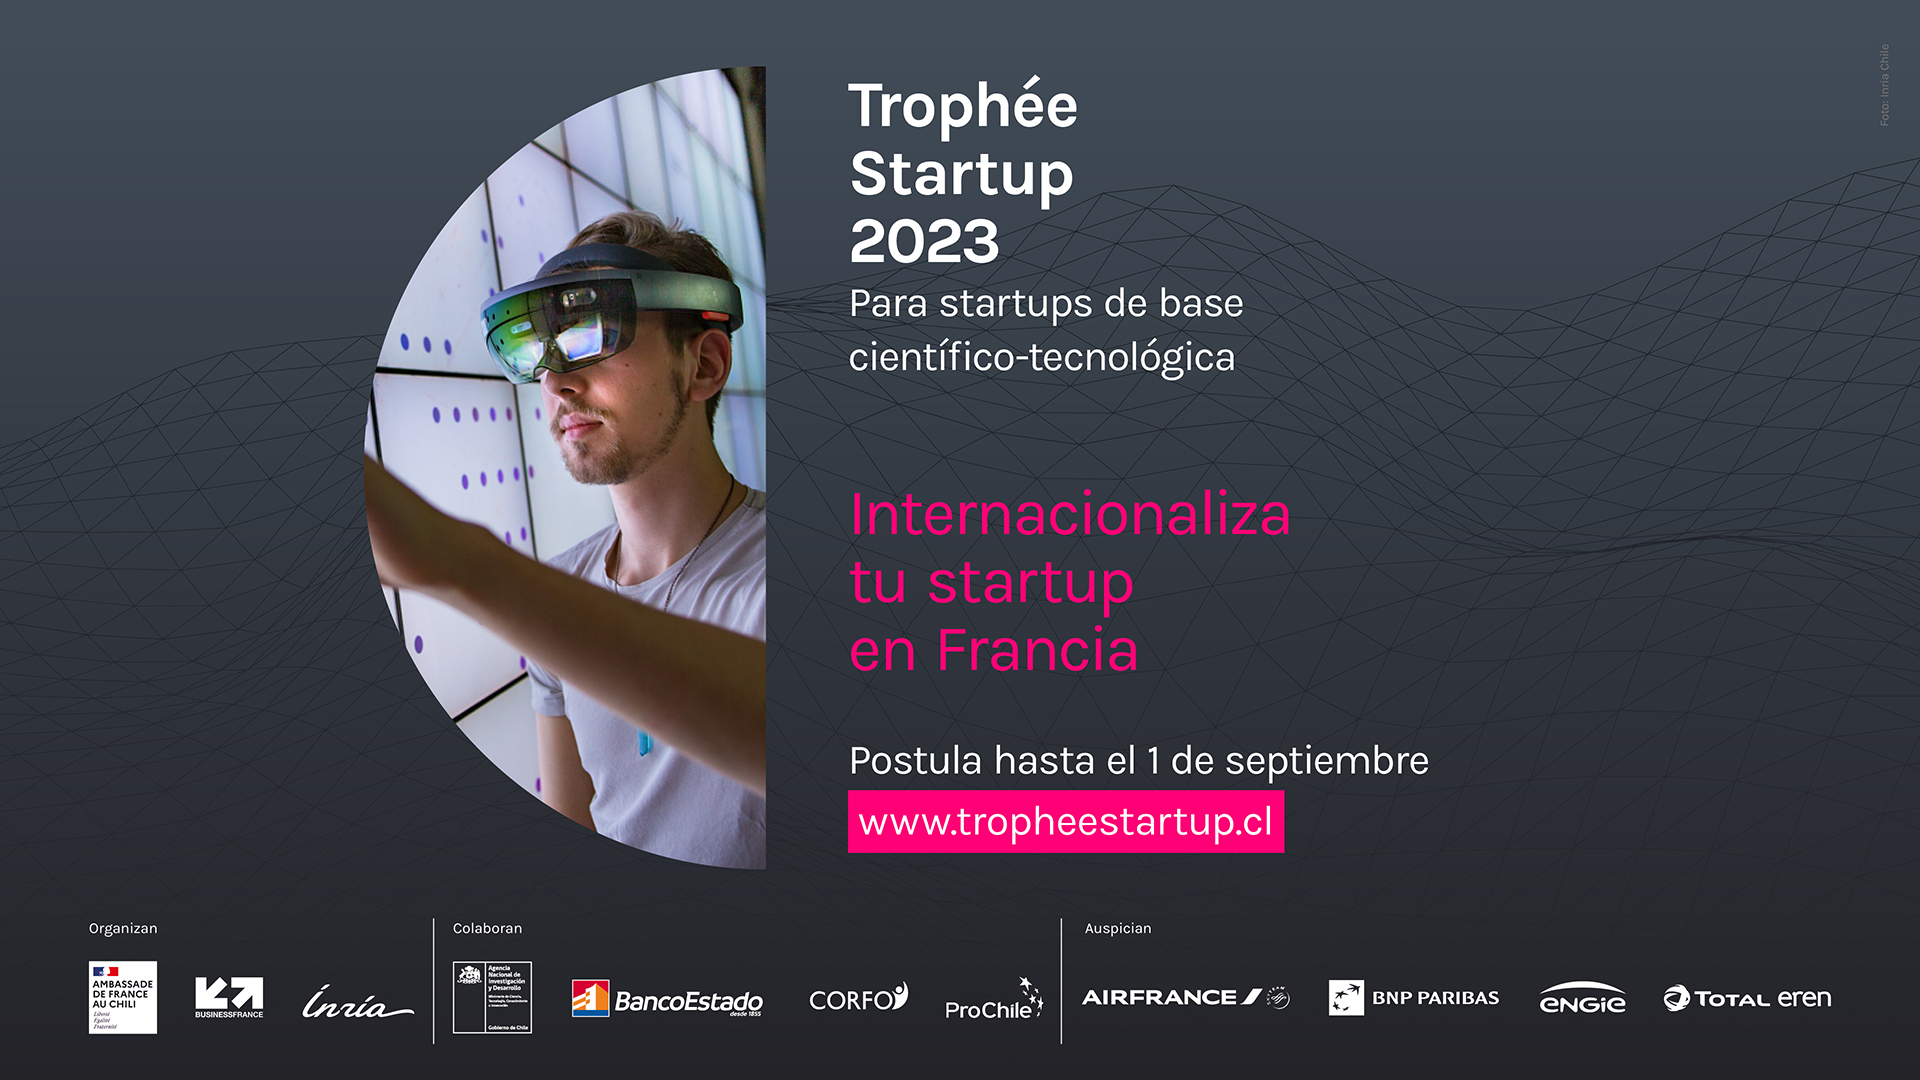 Trophée Startup 2023